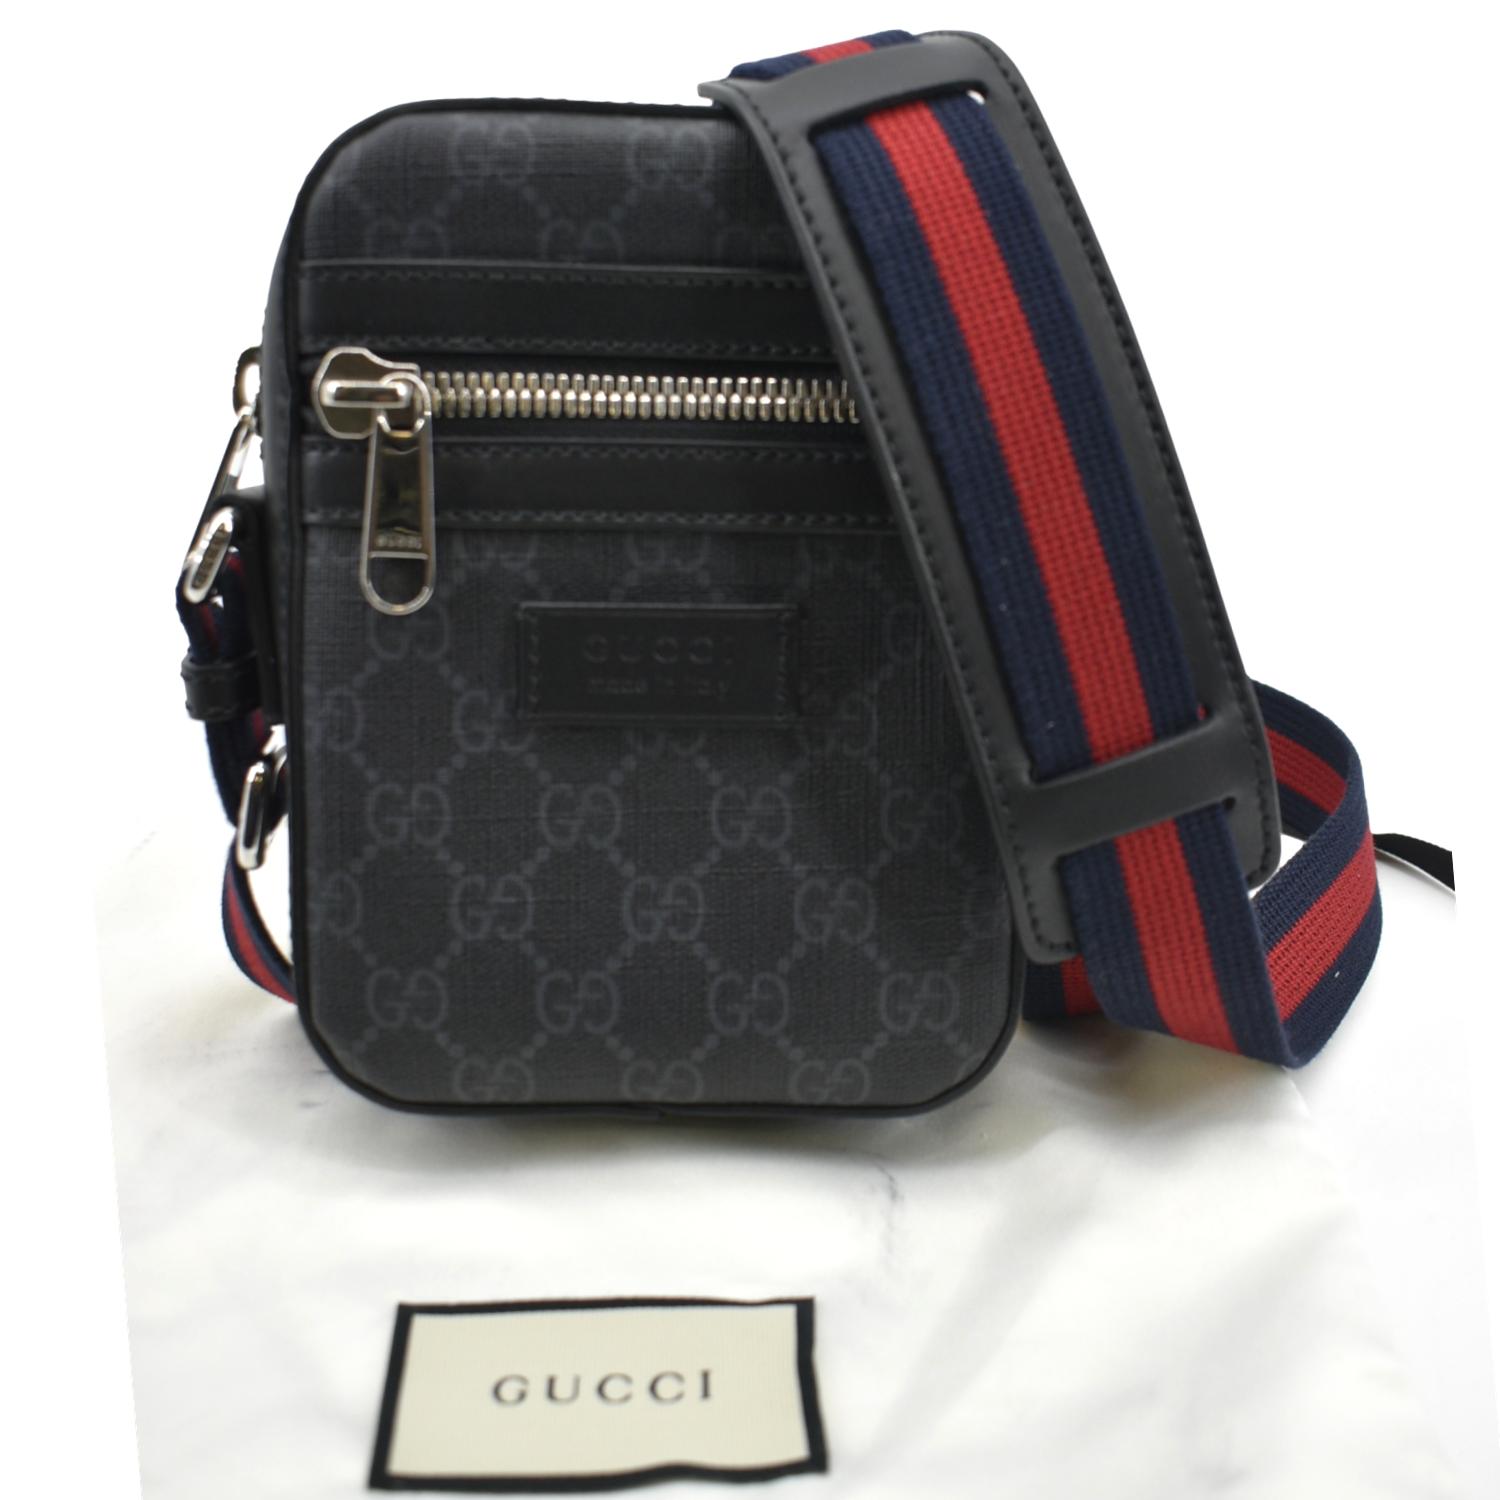 GG Black sling backpack